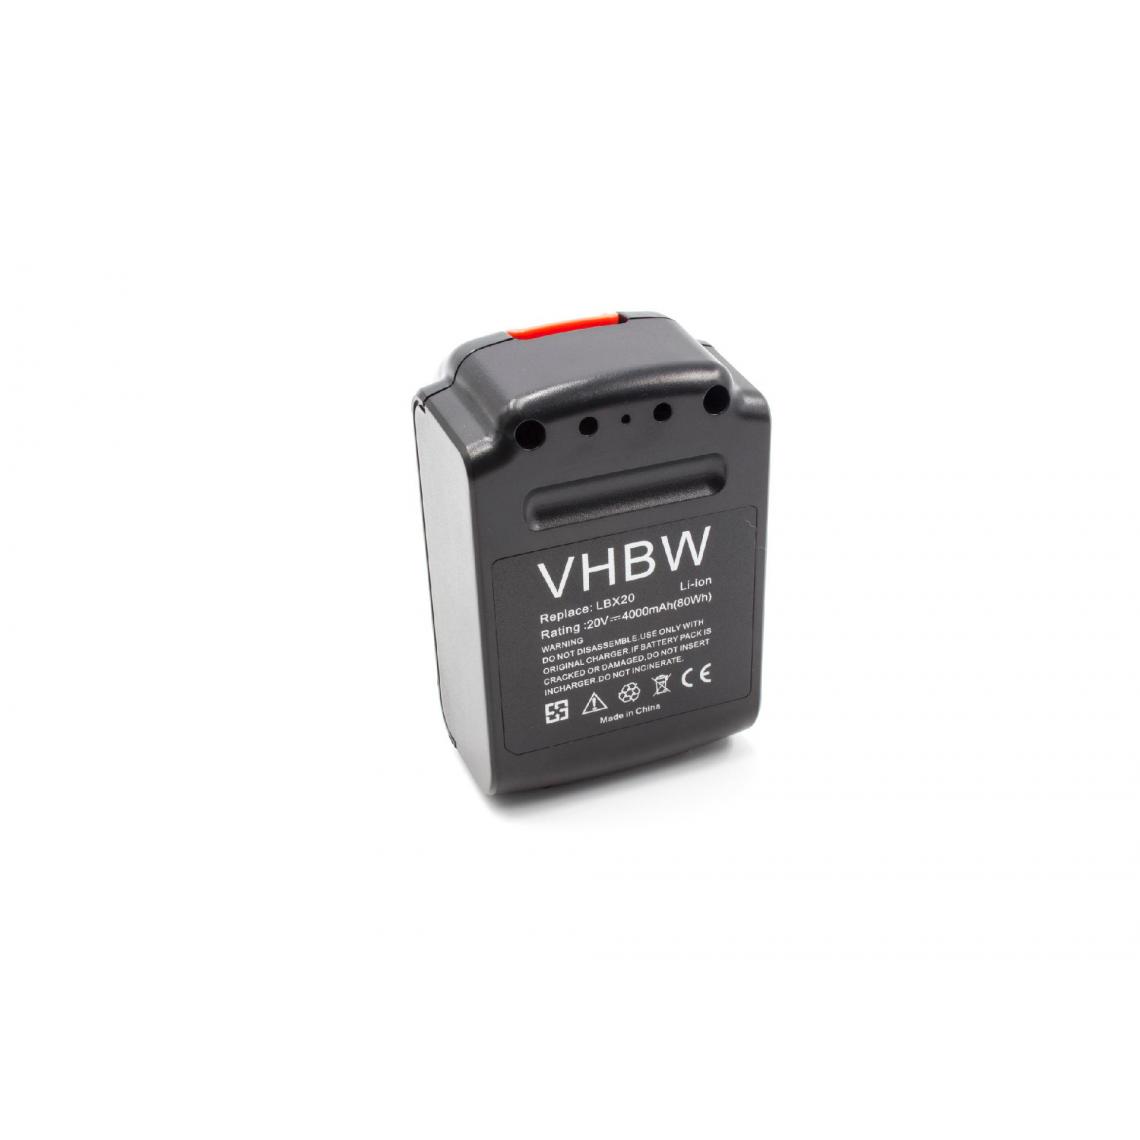 Vhbw - vhbw Batterie remplacement pour Black & Decker LB20 pour outil électrique (4000mAh Li-ion 20V) - Clouterie